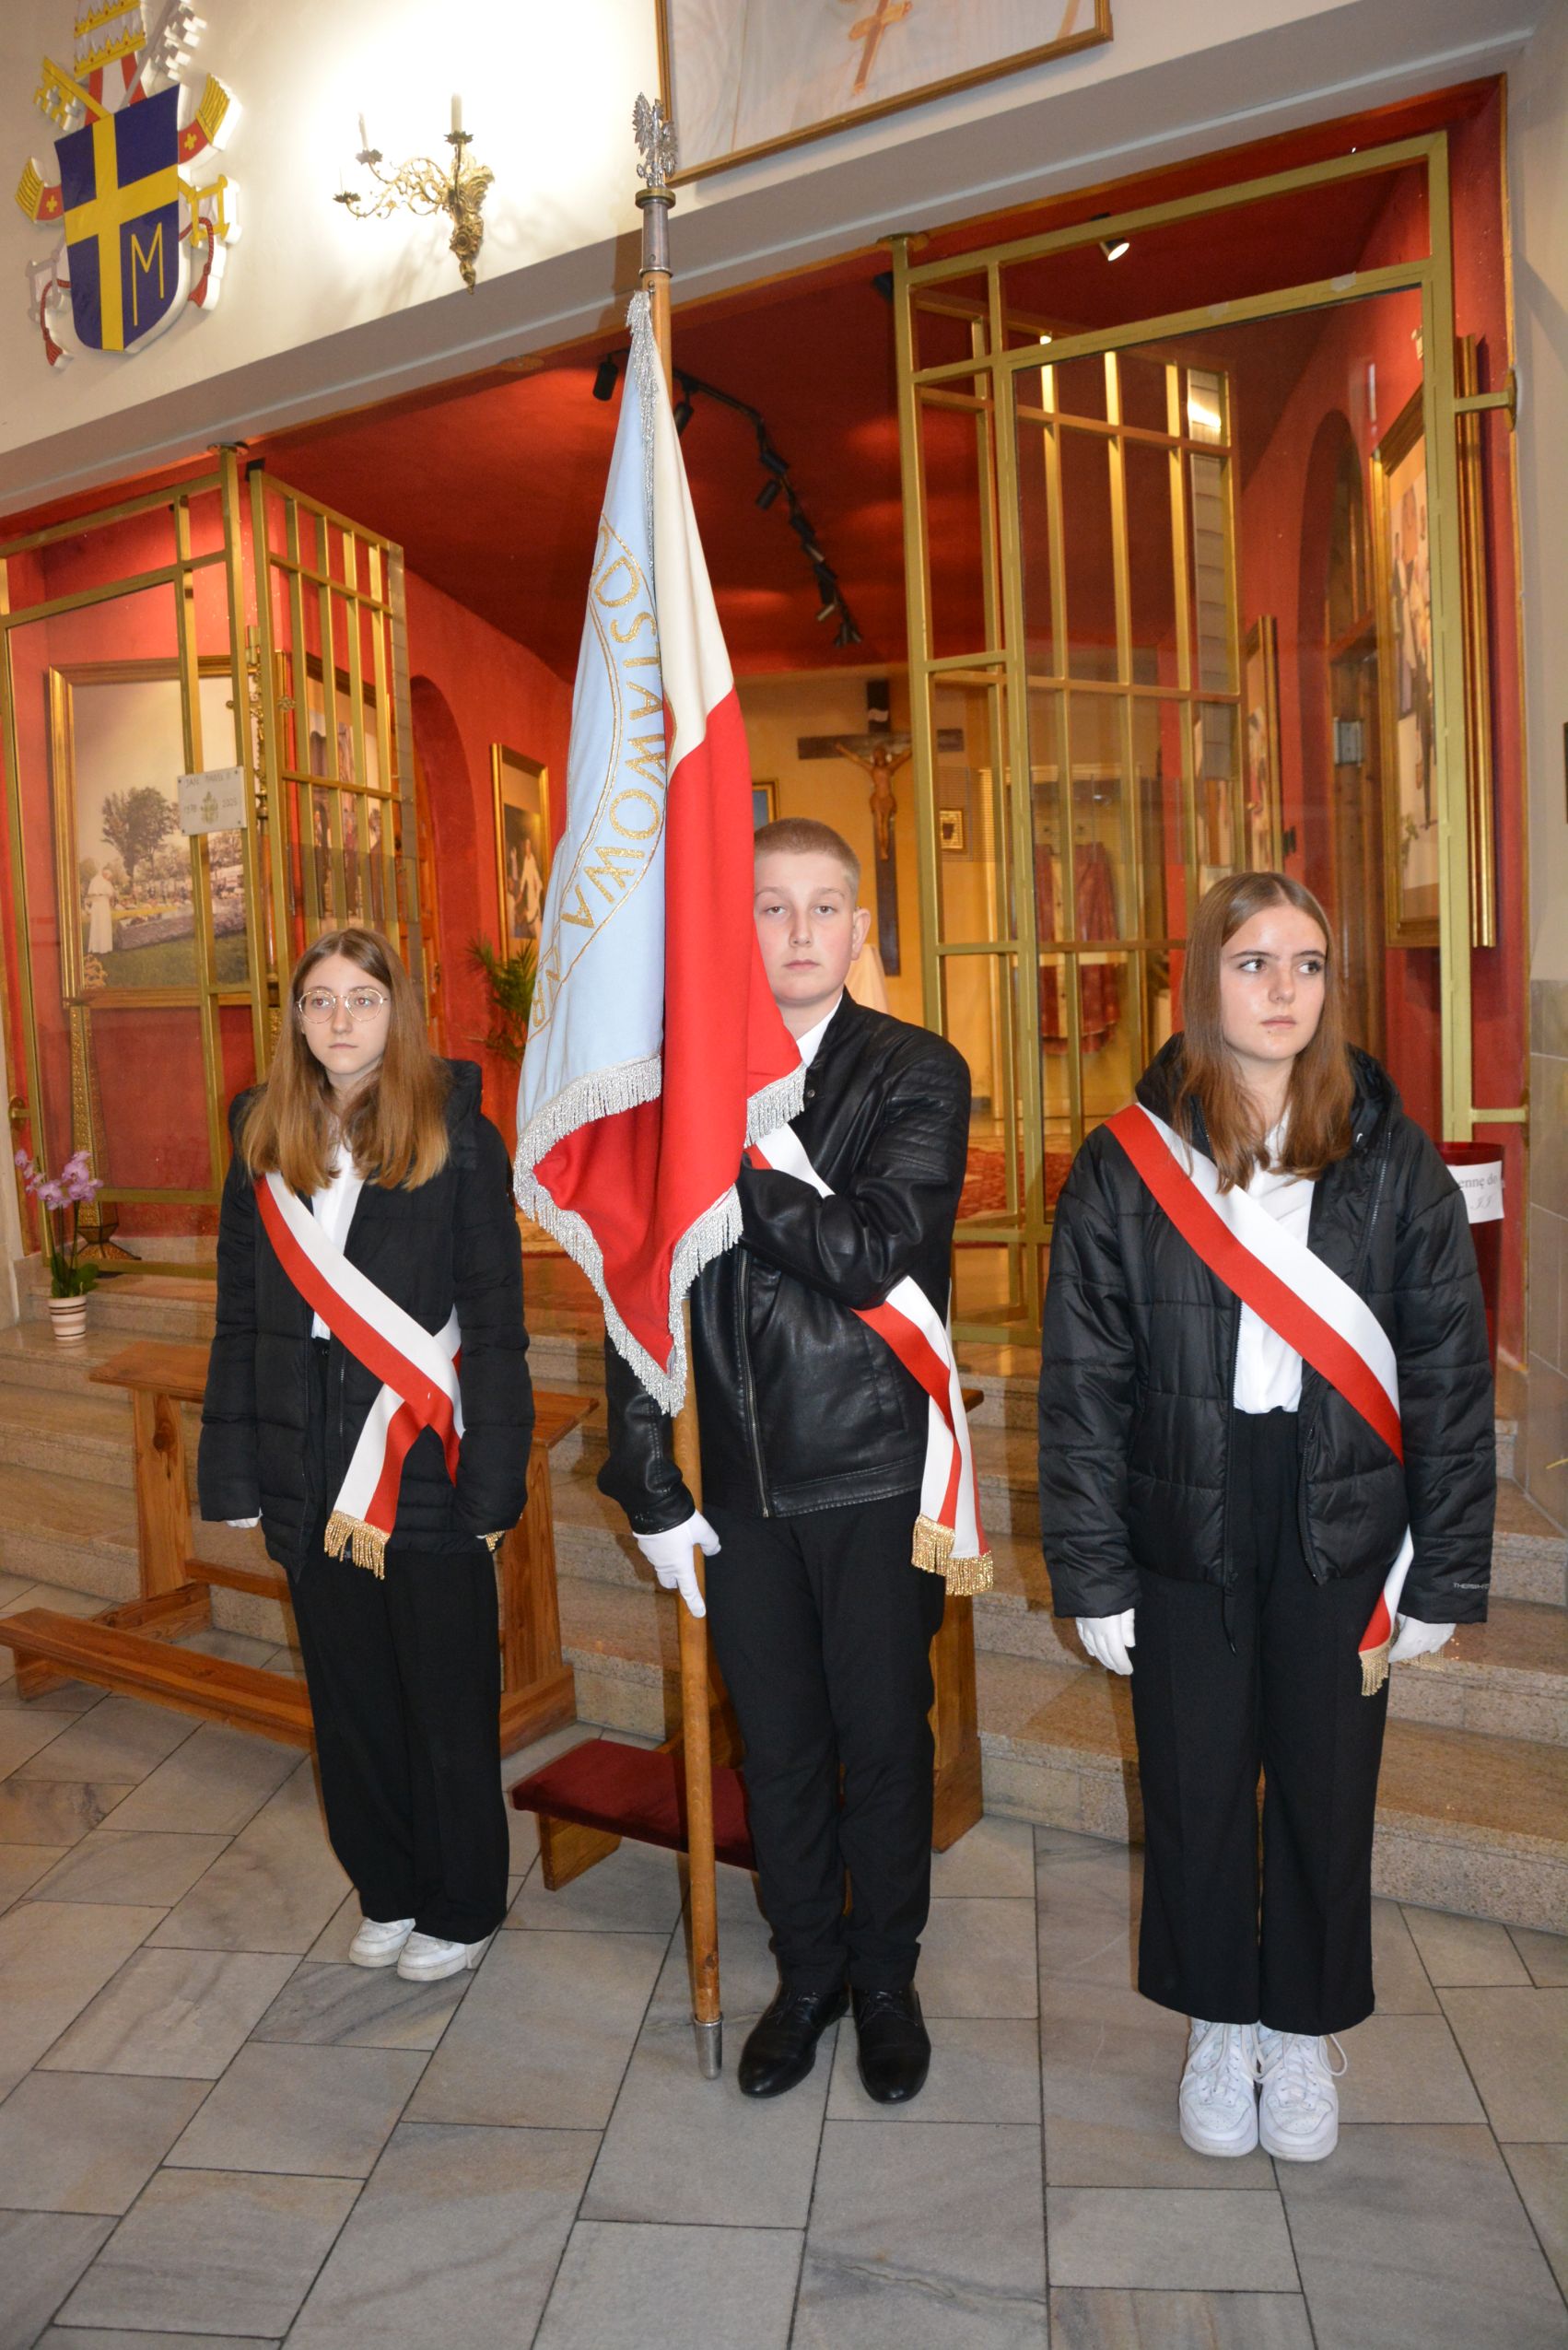 Wnętrze kościoła, poczet sztandarowy, w środku chłopiec trzyma sztandar, po obu stronach dziewczynki, wszyscy przepasani biało-czerwoną szarfą